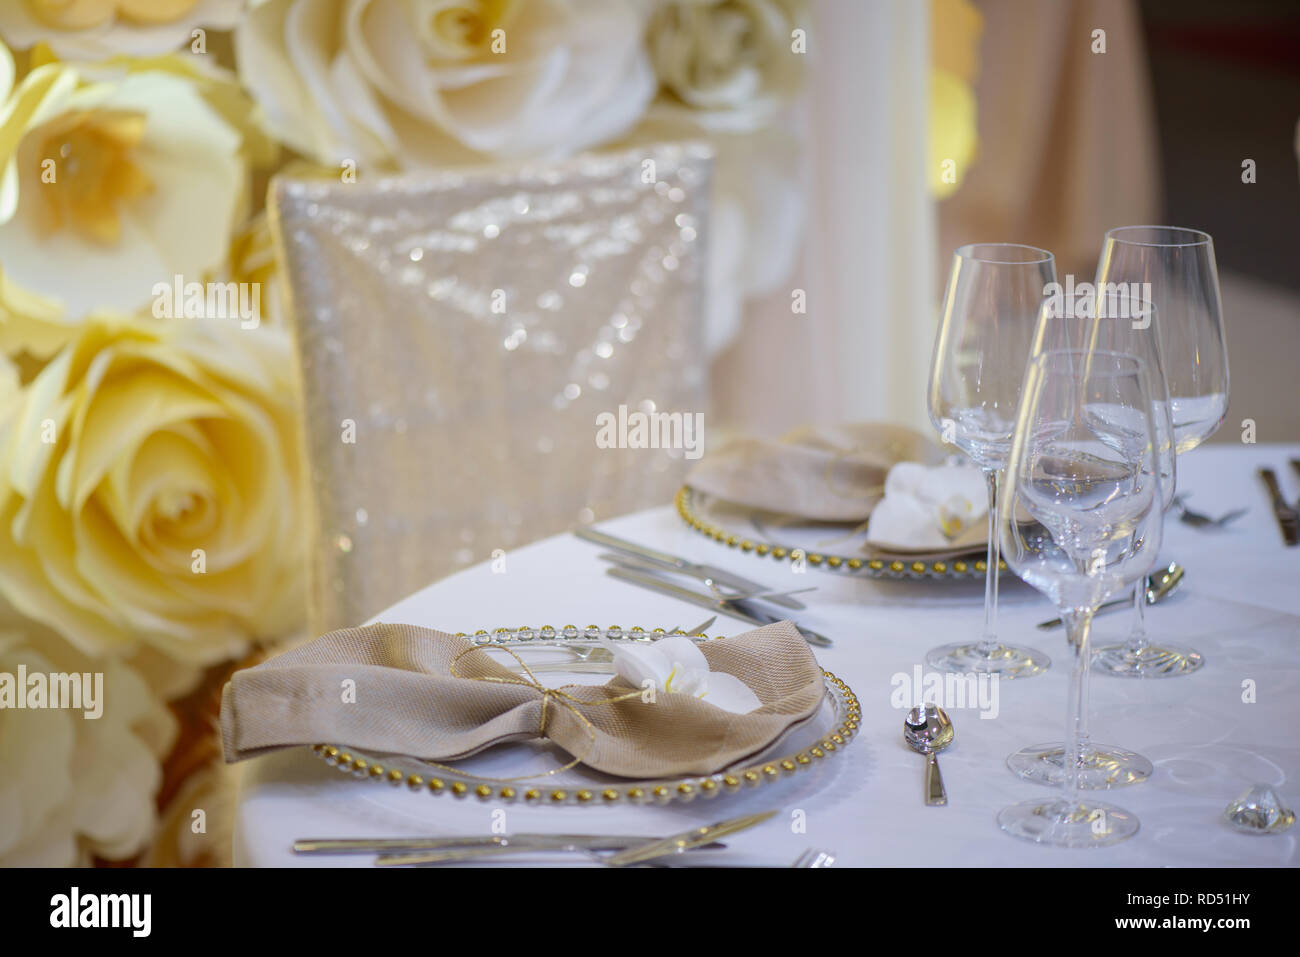 Sitzplatz in einer feierlichen Veranstaltung oder Fine Dining Restaurant mit transparenten Platten mit goldenen Details, mit elegan Gläser und Besteck Stockfoto